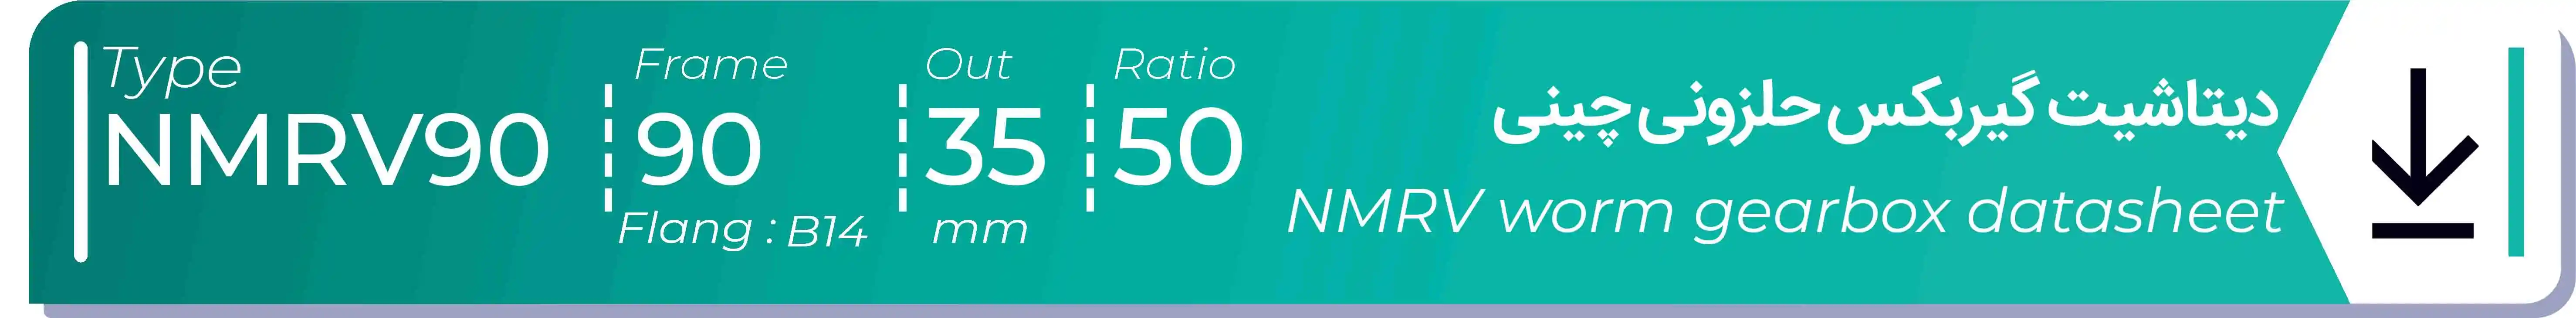  دیتاشیت و مشخصات فنی گیربکس حلزونی چینی   NMRV90  -  با خروجی 35- میلی متر و نسبت50 و فریم 90